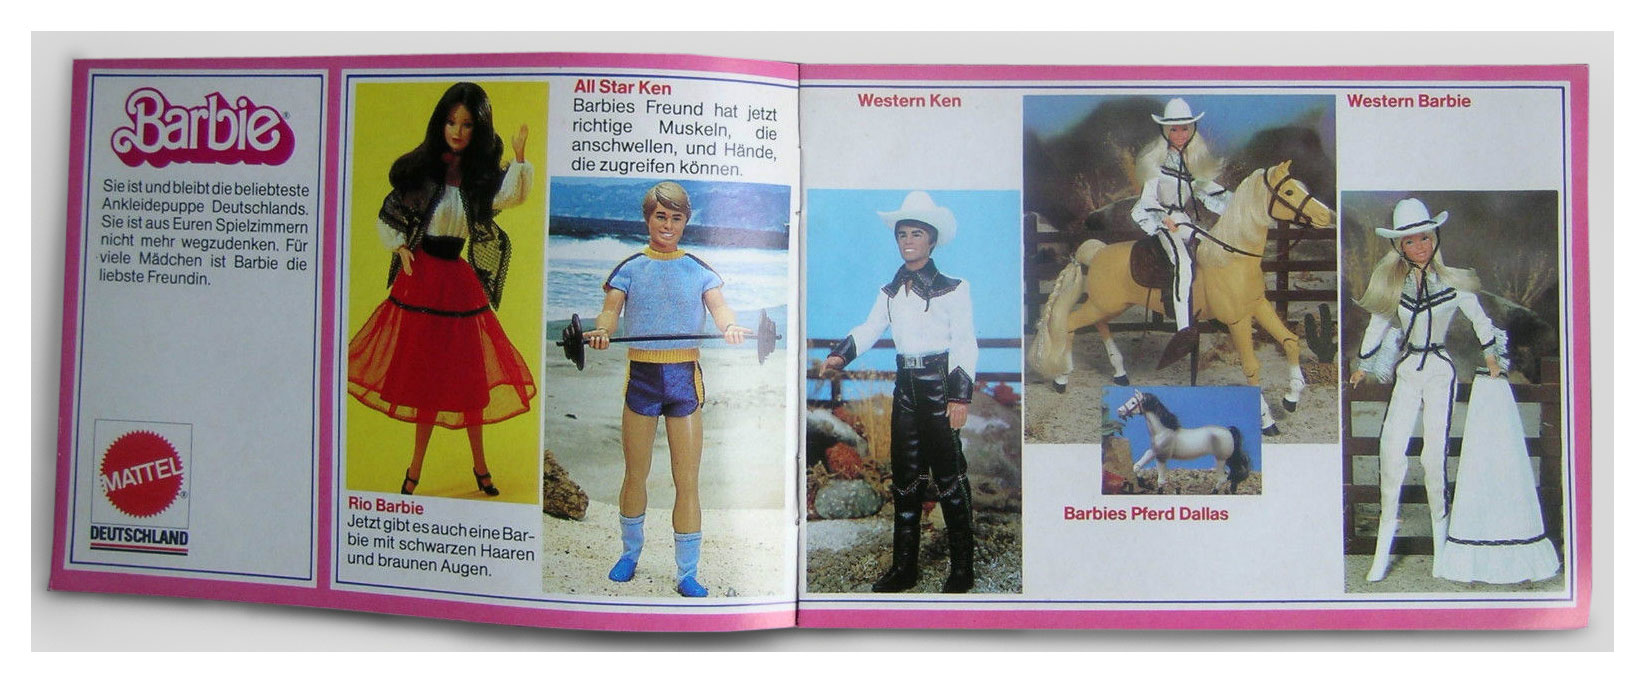 From 1982 German Barbie booklet